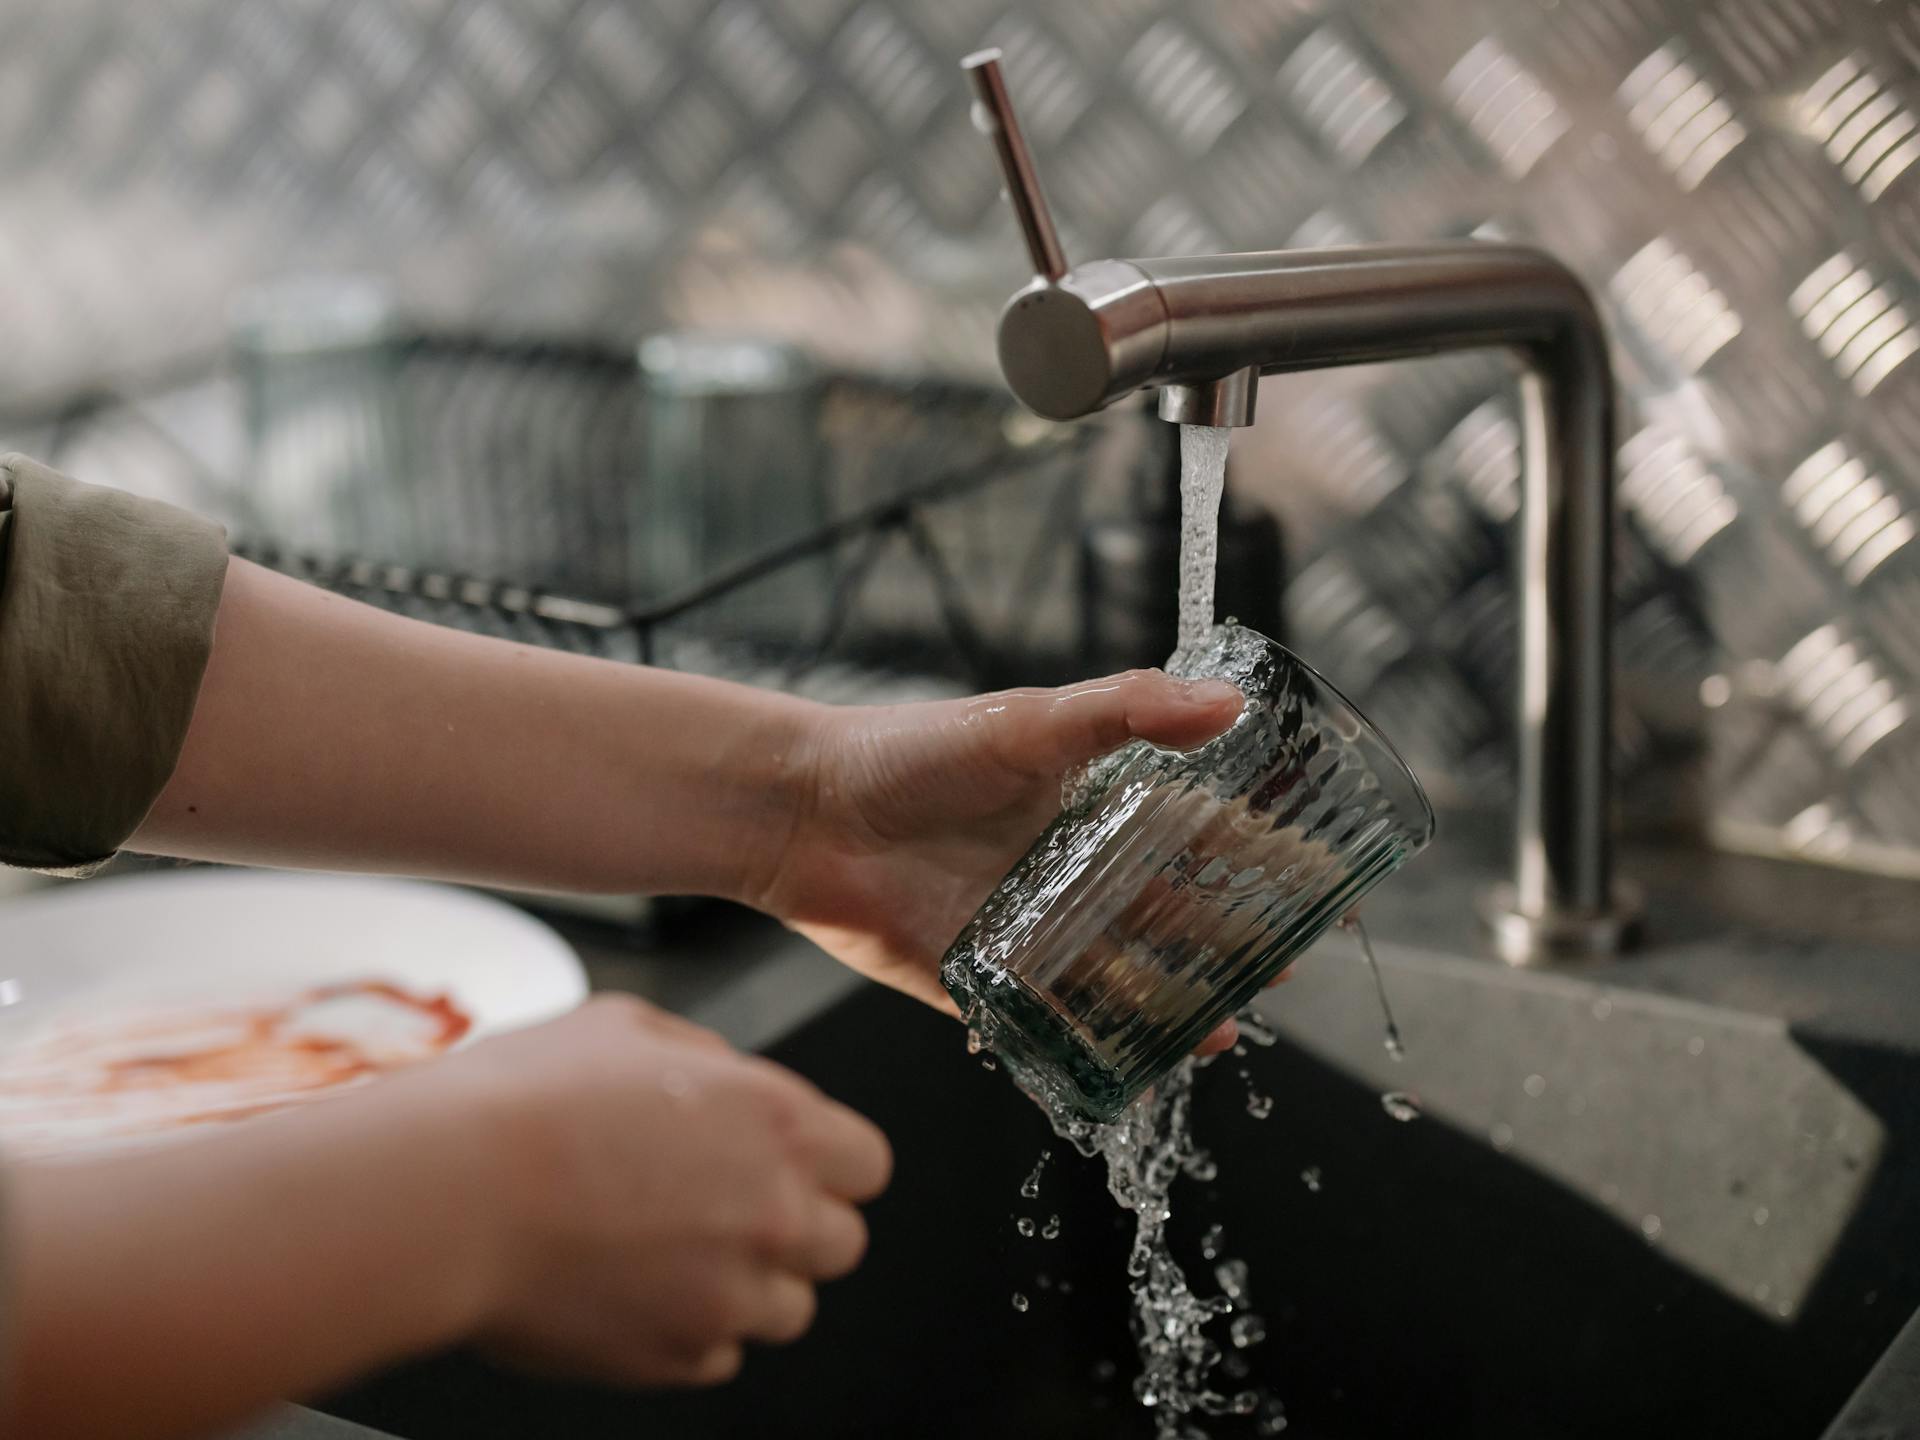 Une personne faisant la vaisselle | Source : Pexels